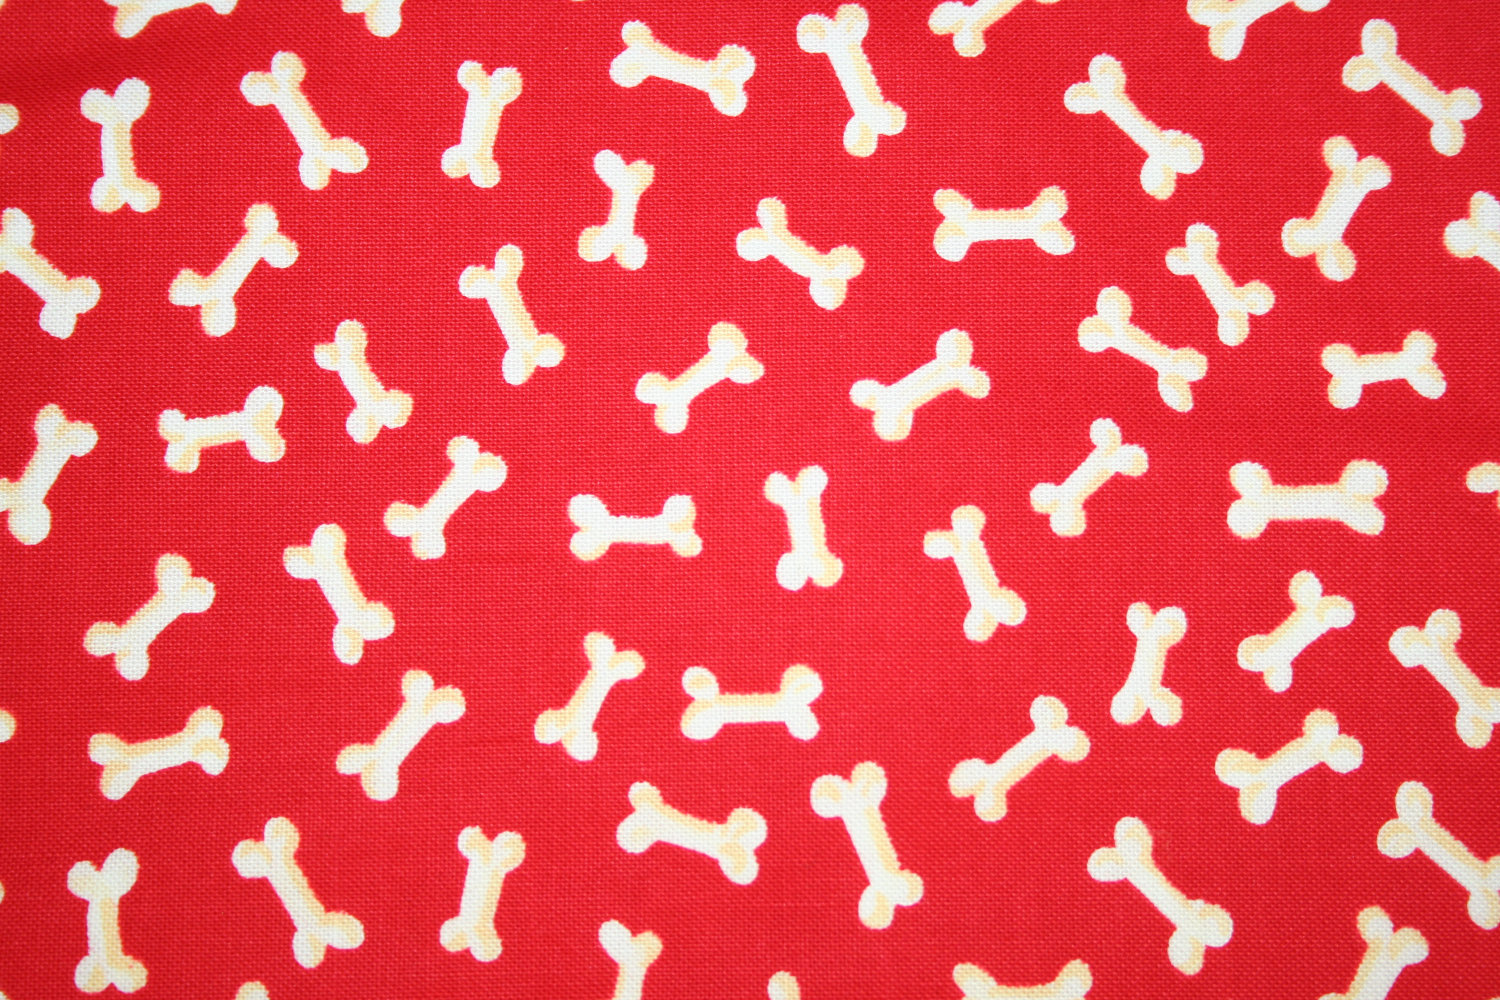 [40+] Dog Bone Wallpaper | WallpaperSafari.com